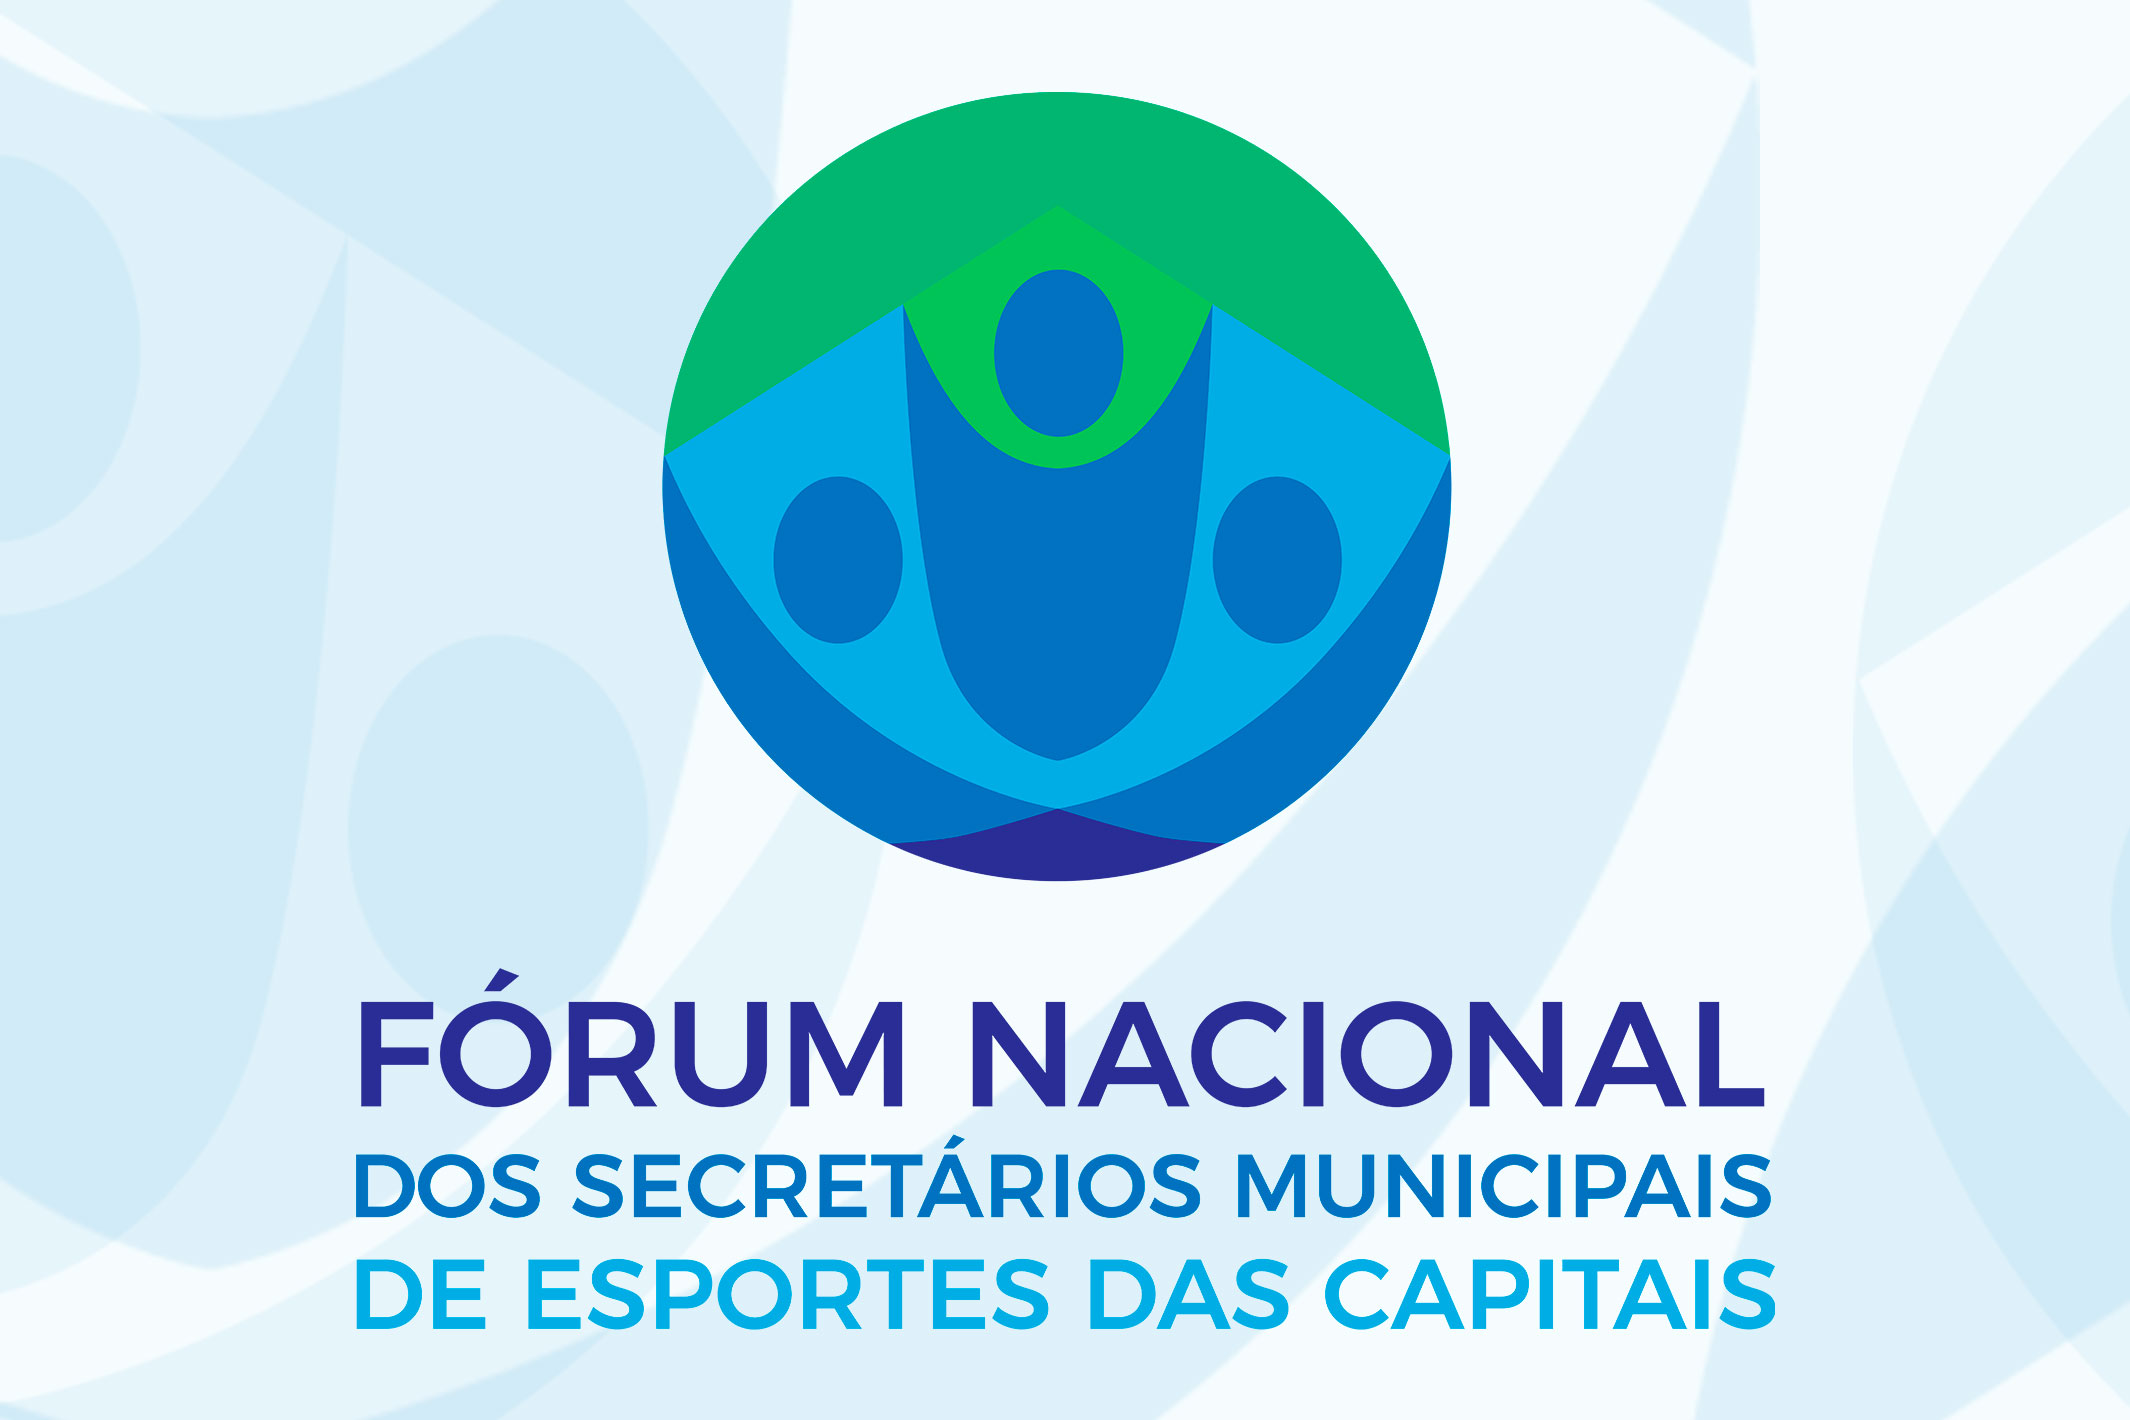 Na imagem, logo do Fórum Nacional dos Secretários de Esportes das Capitais.